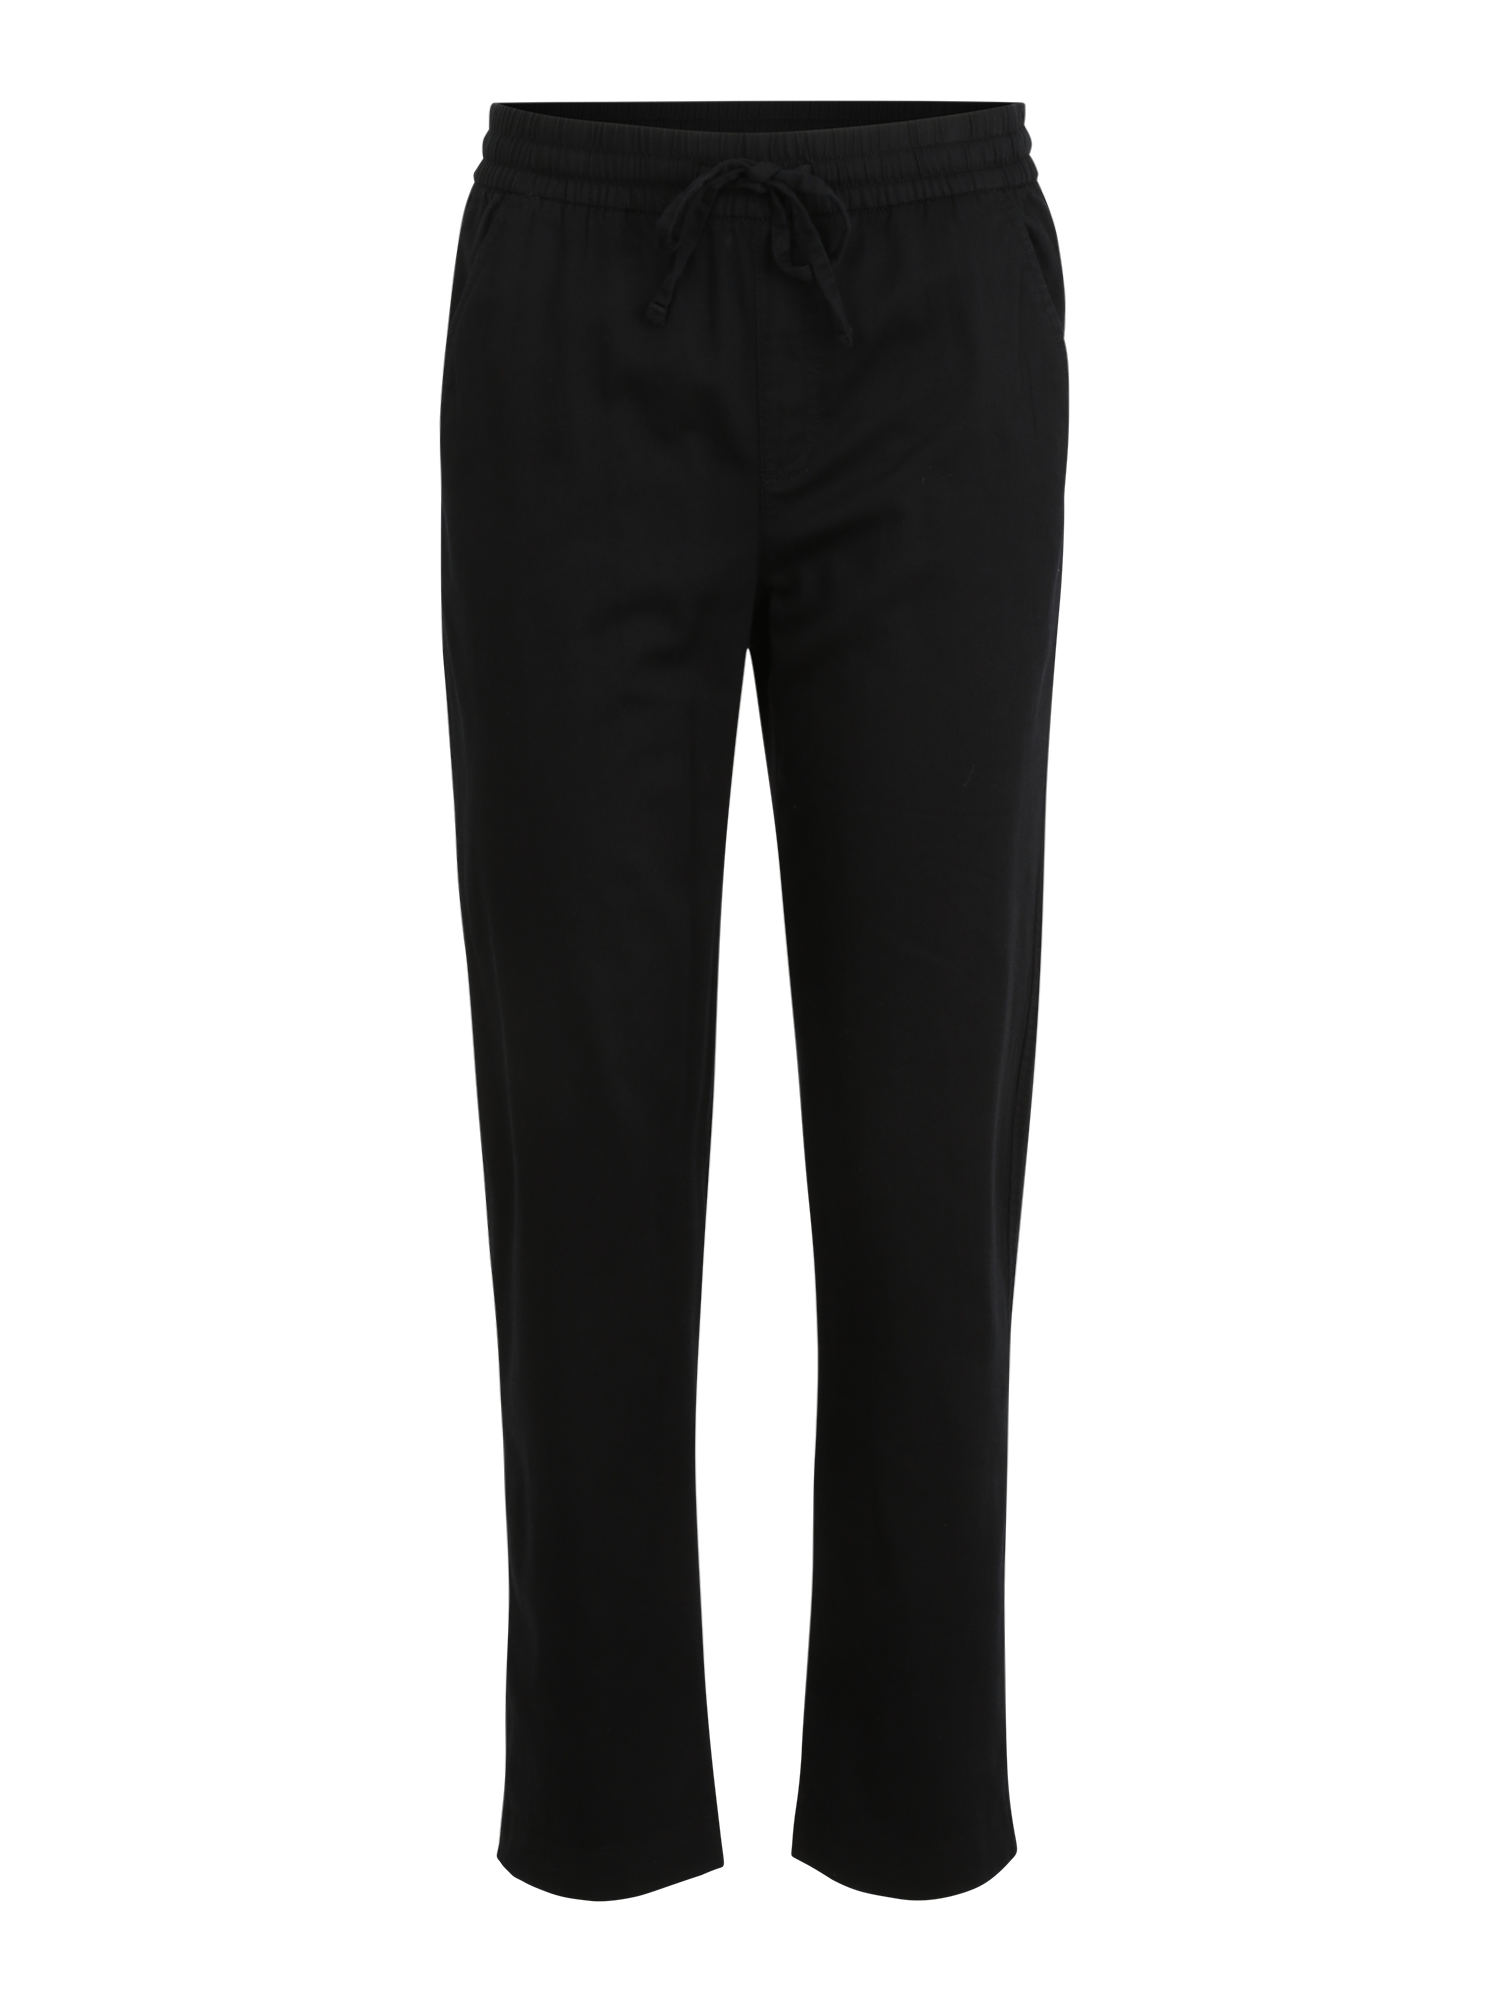 bHHjR Spodnie Gap Tall Spodnie w kolorze Czarnym 